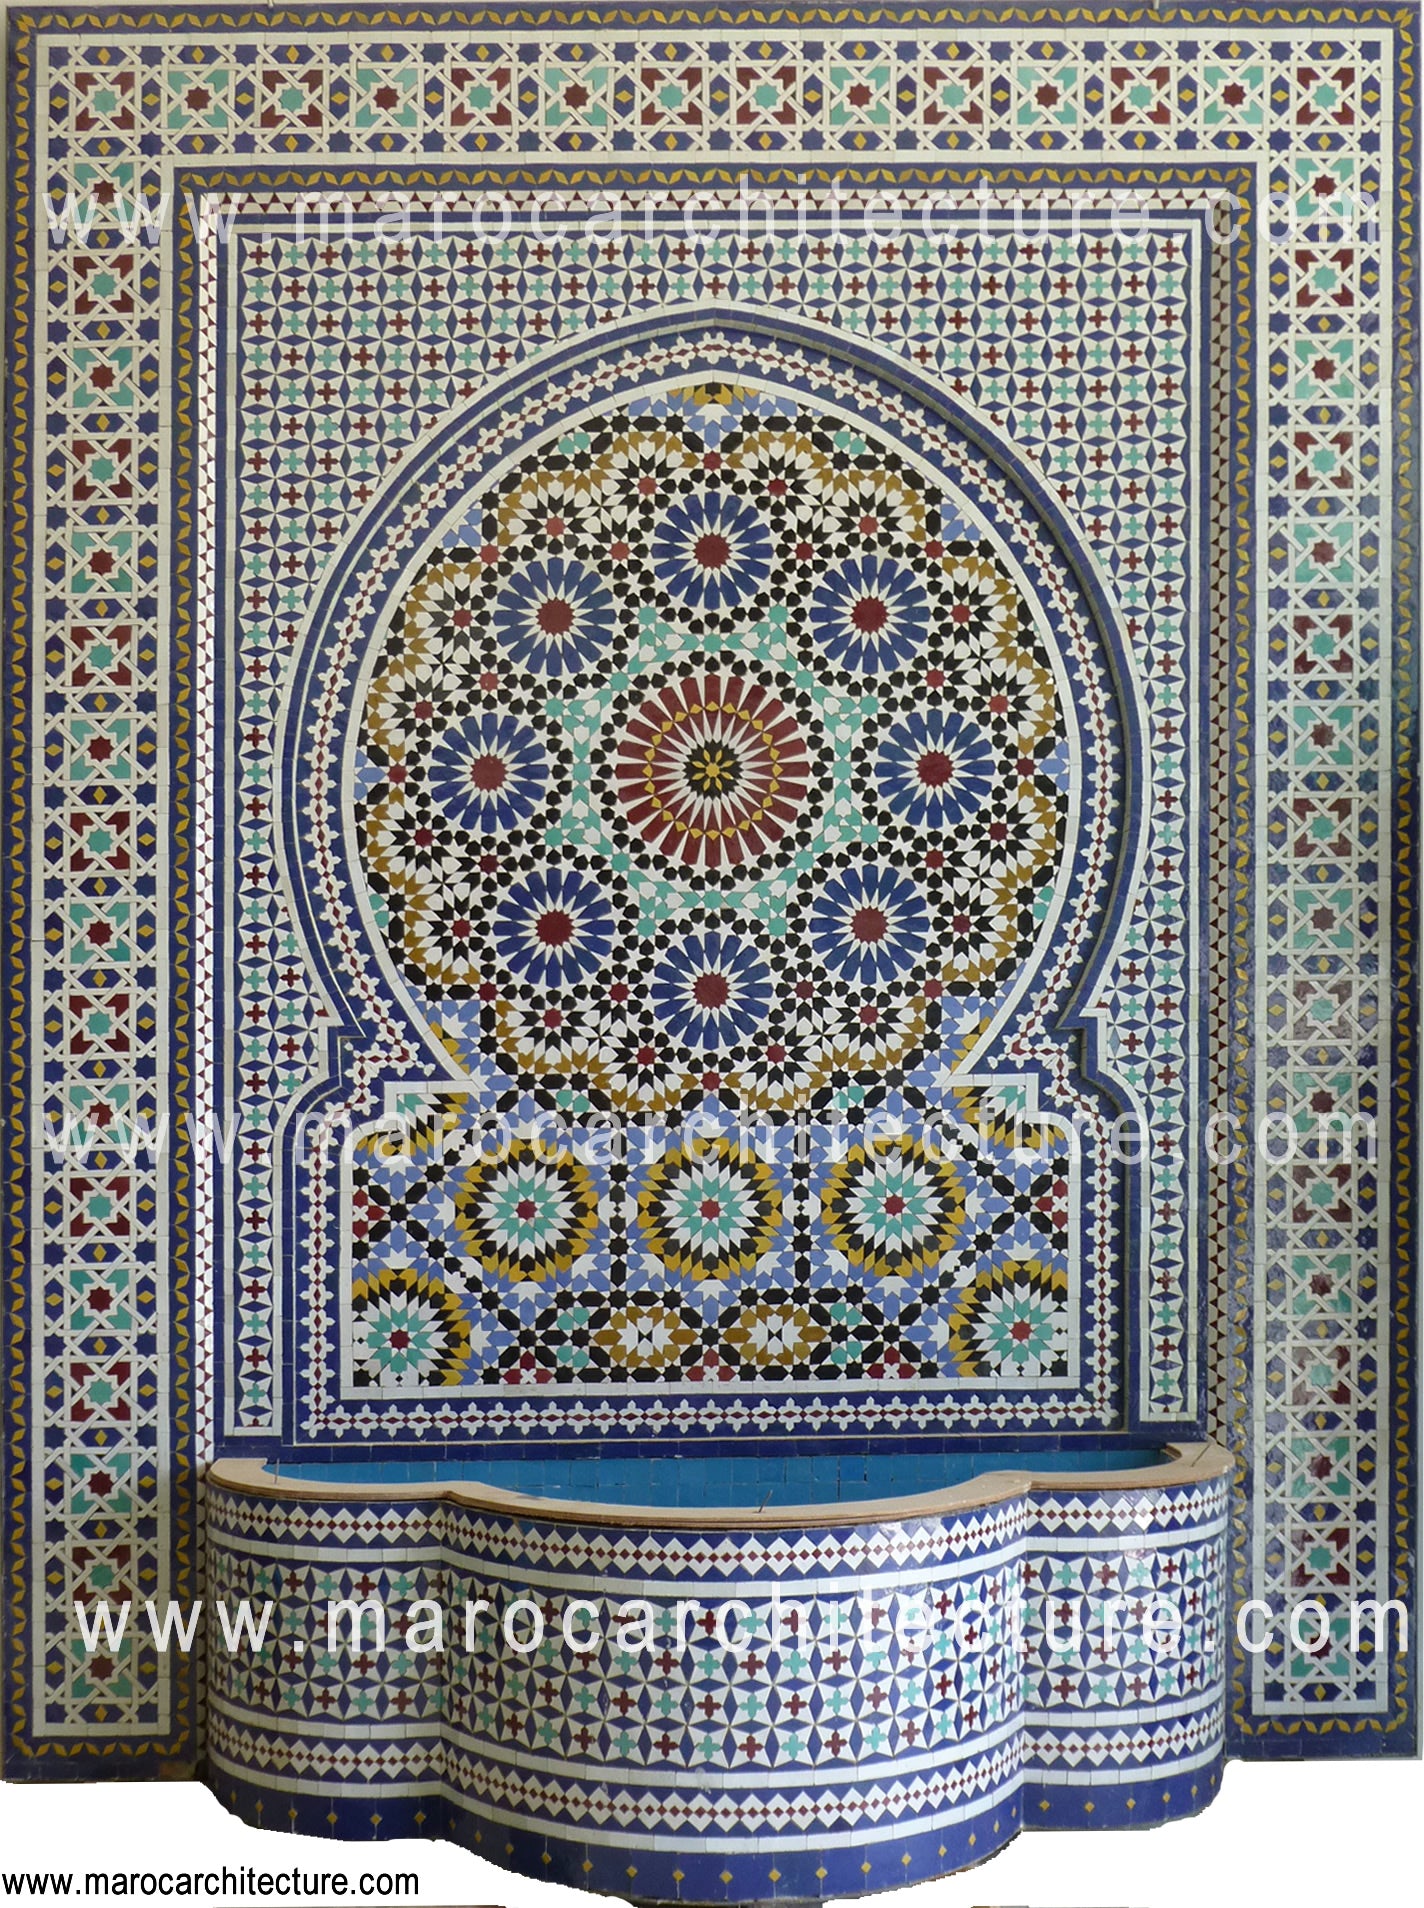 Mosaic wall fountain 2401